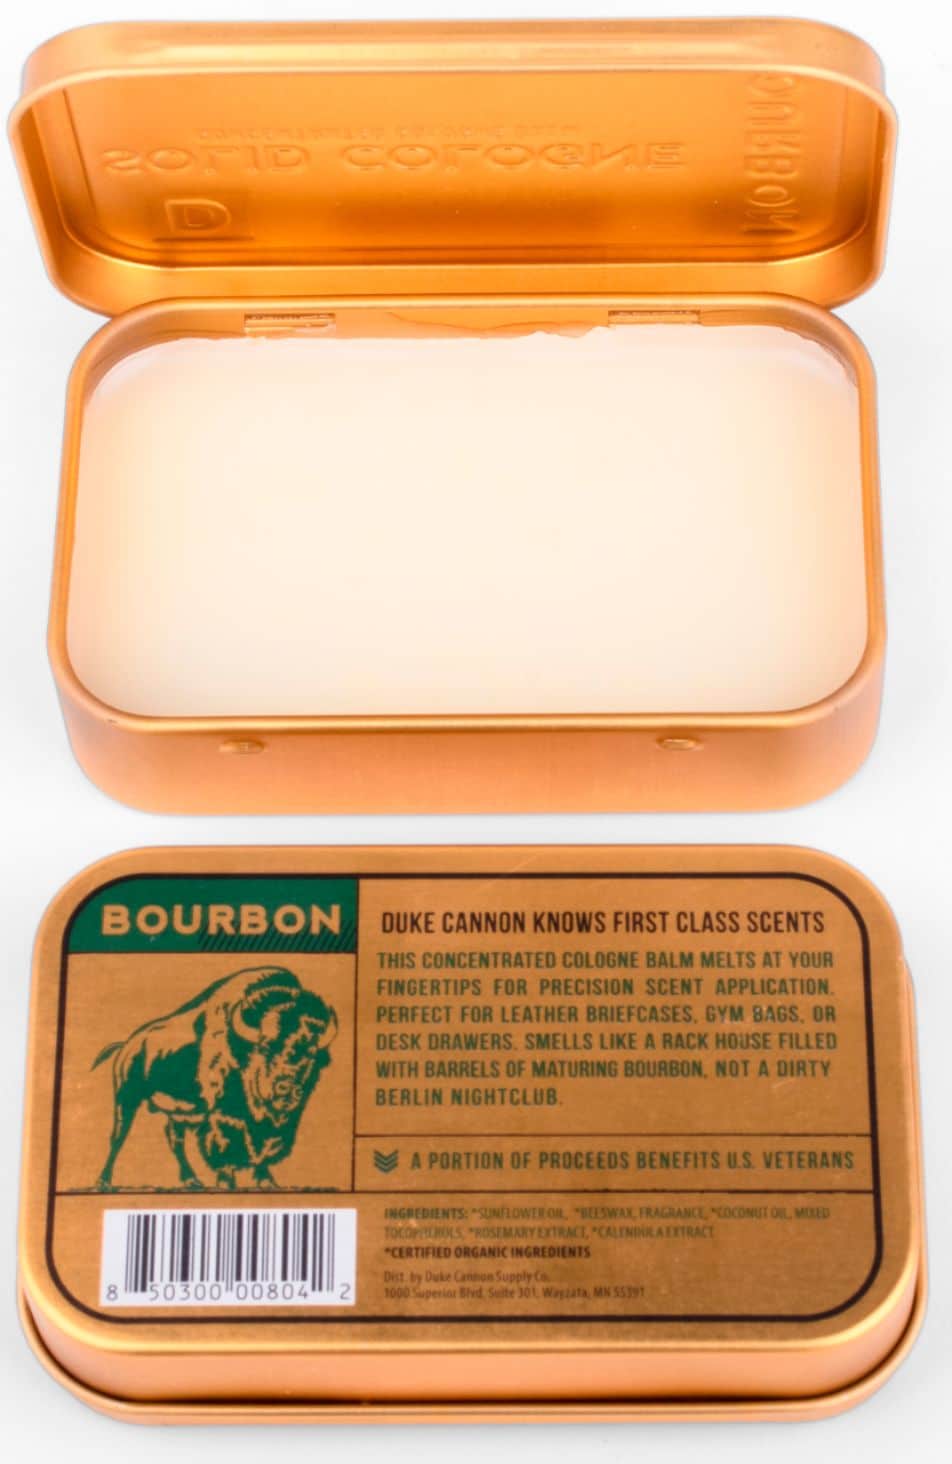 Duke Cannon - Bourbon Solid Cologne Balm - Cream_1